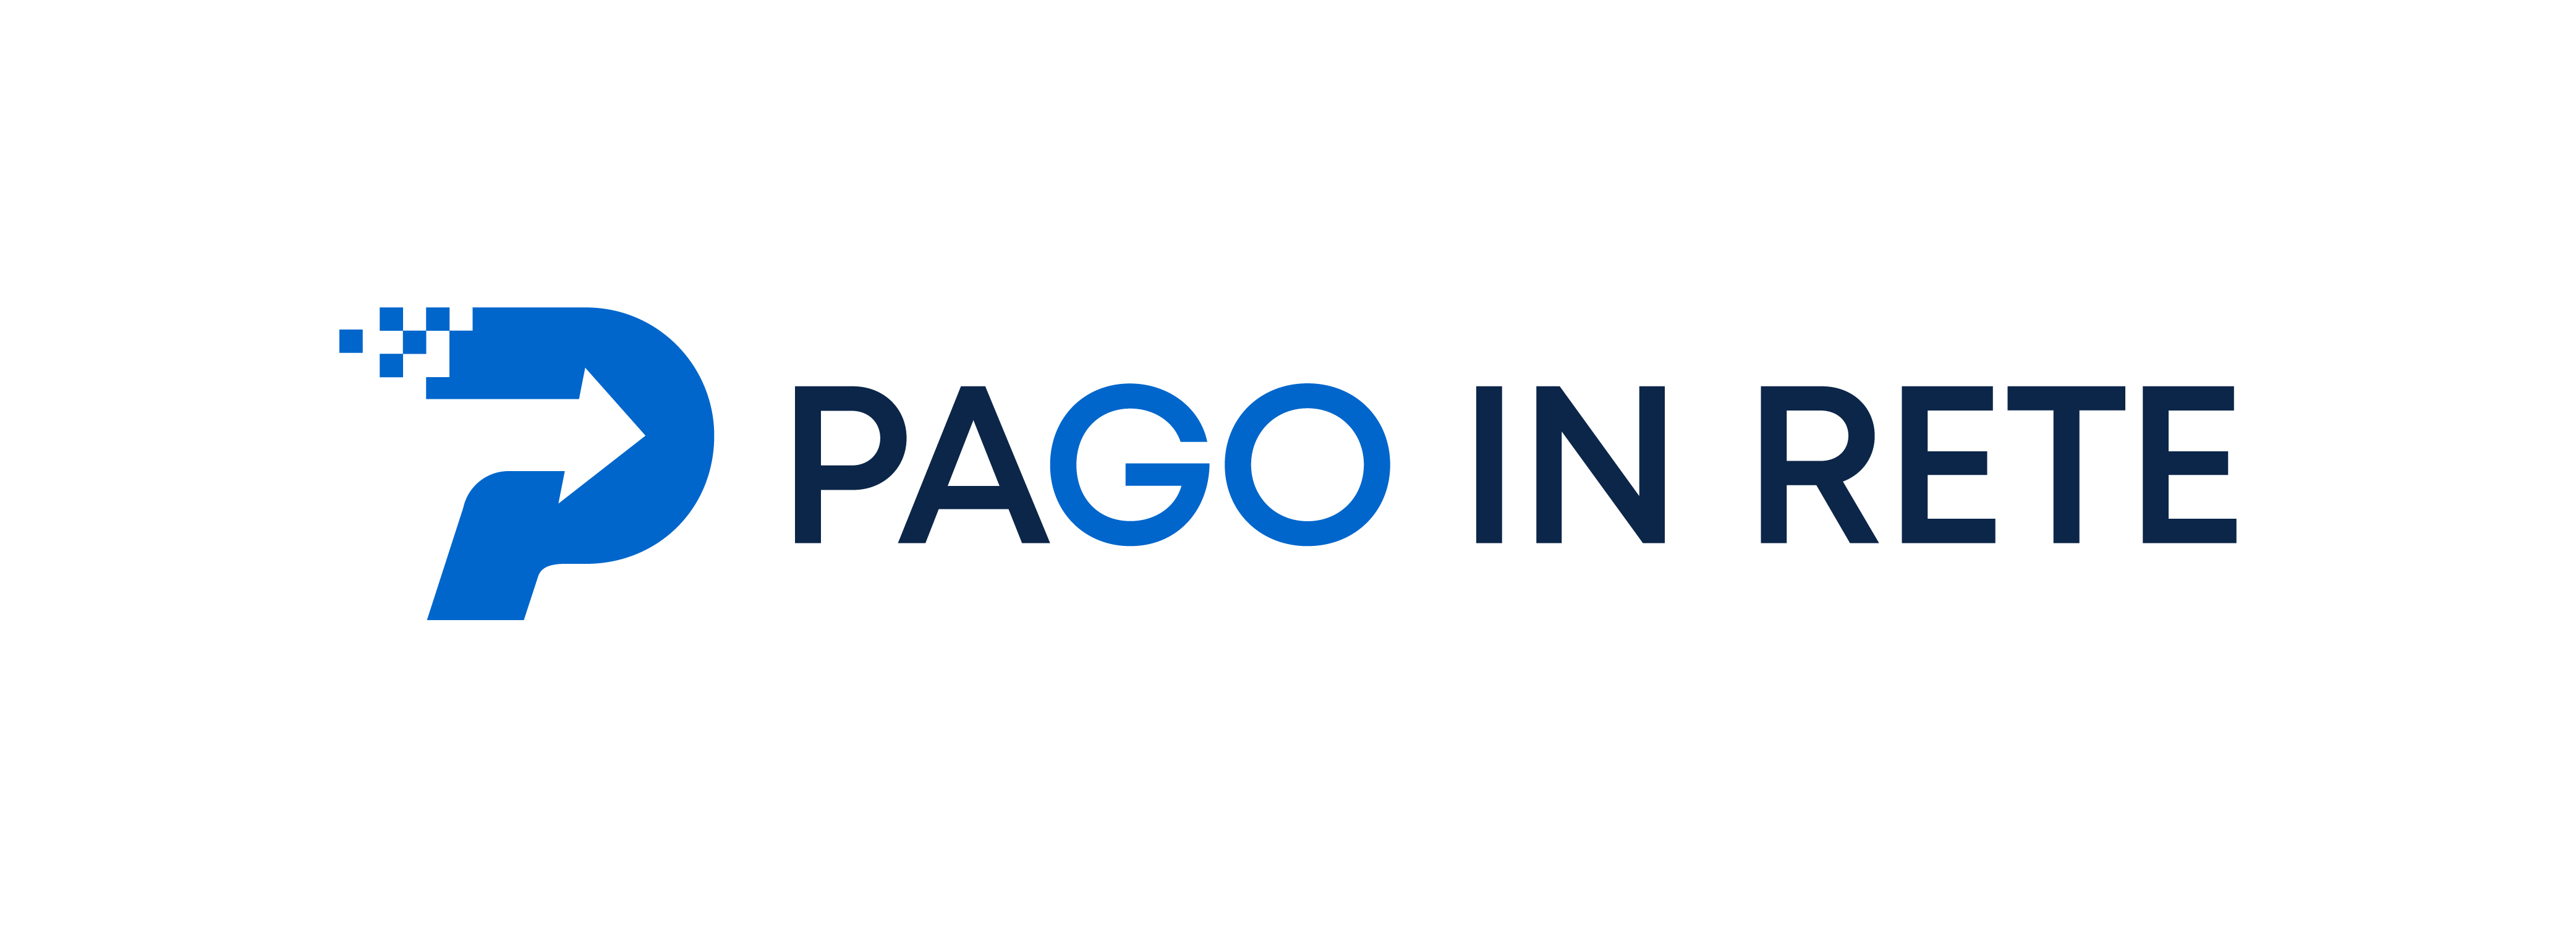 Logo Pago in rete servizio per i pagamenti telematici